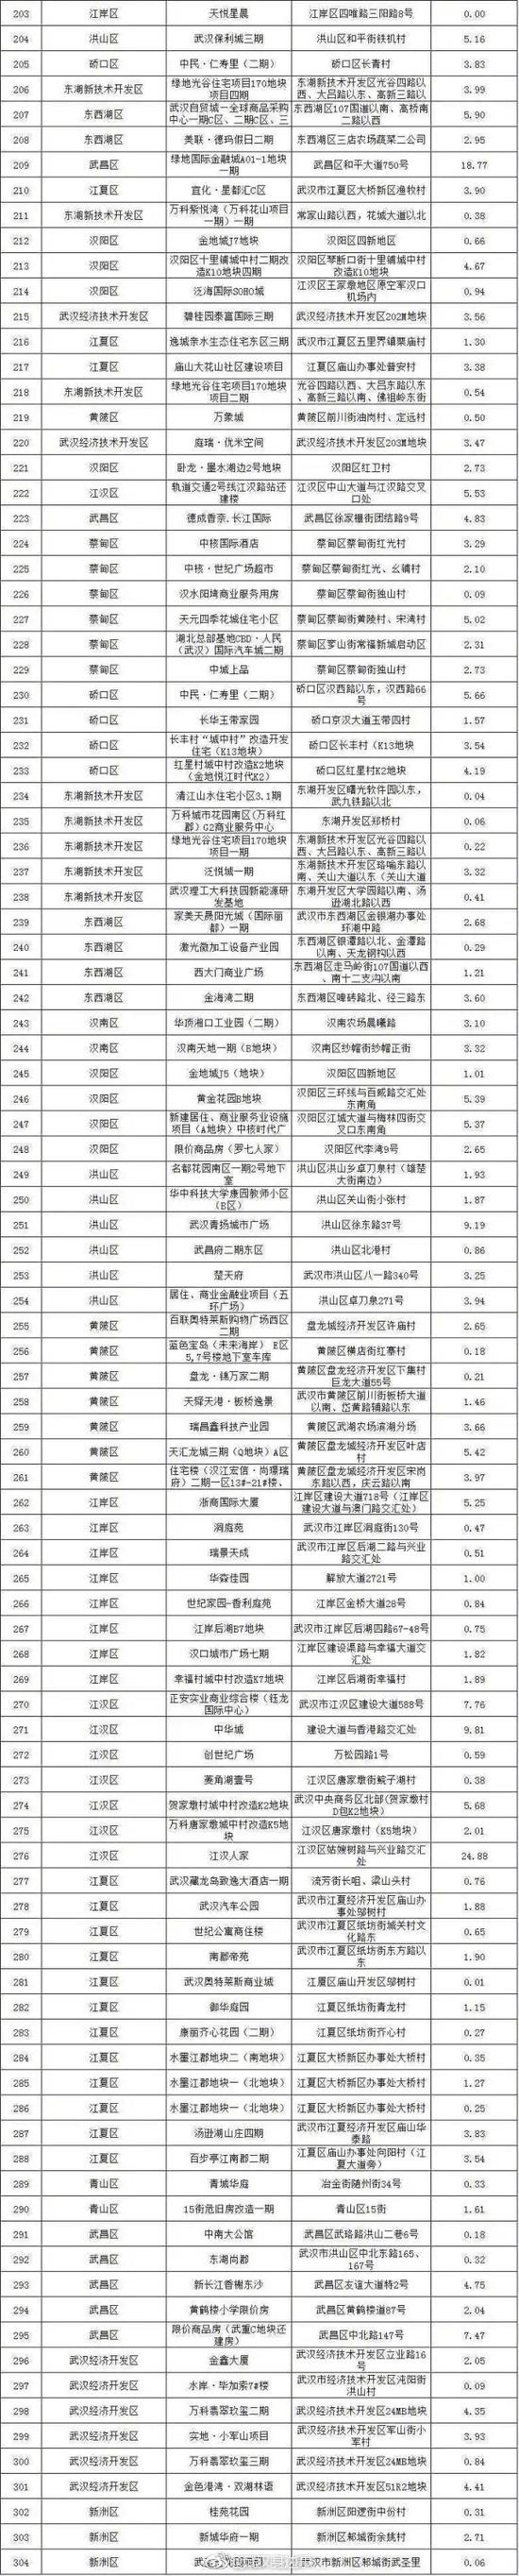 武汉公布全市可售楼盘名单